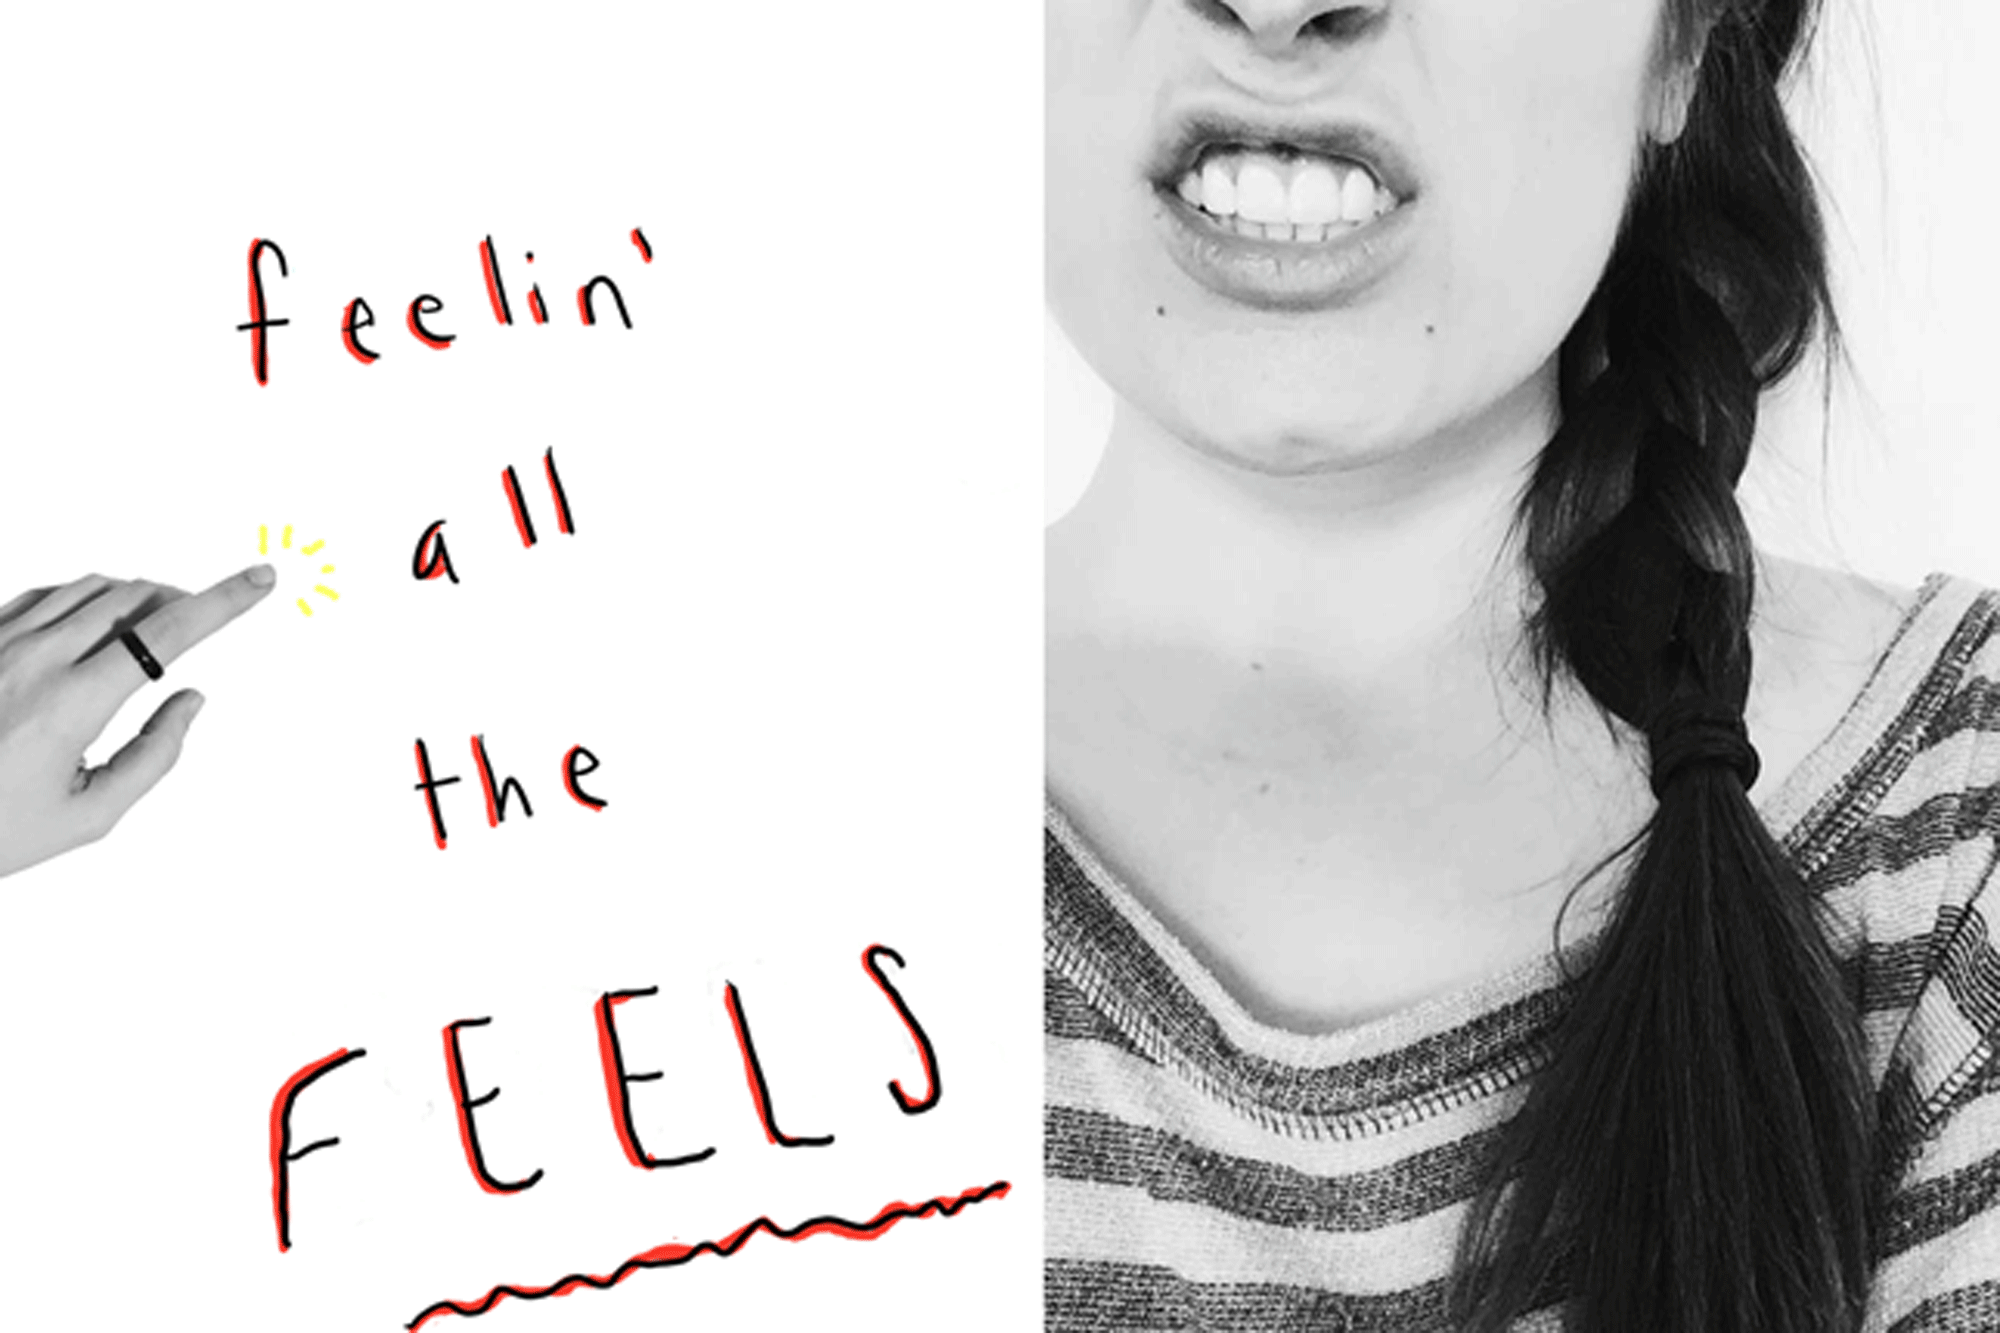 feelin'-all-the-feels2